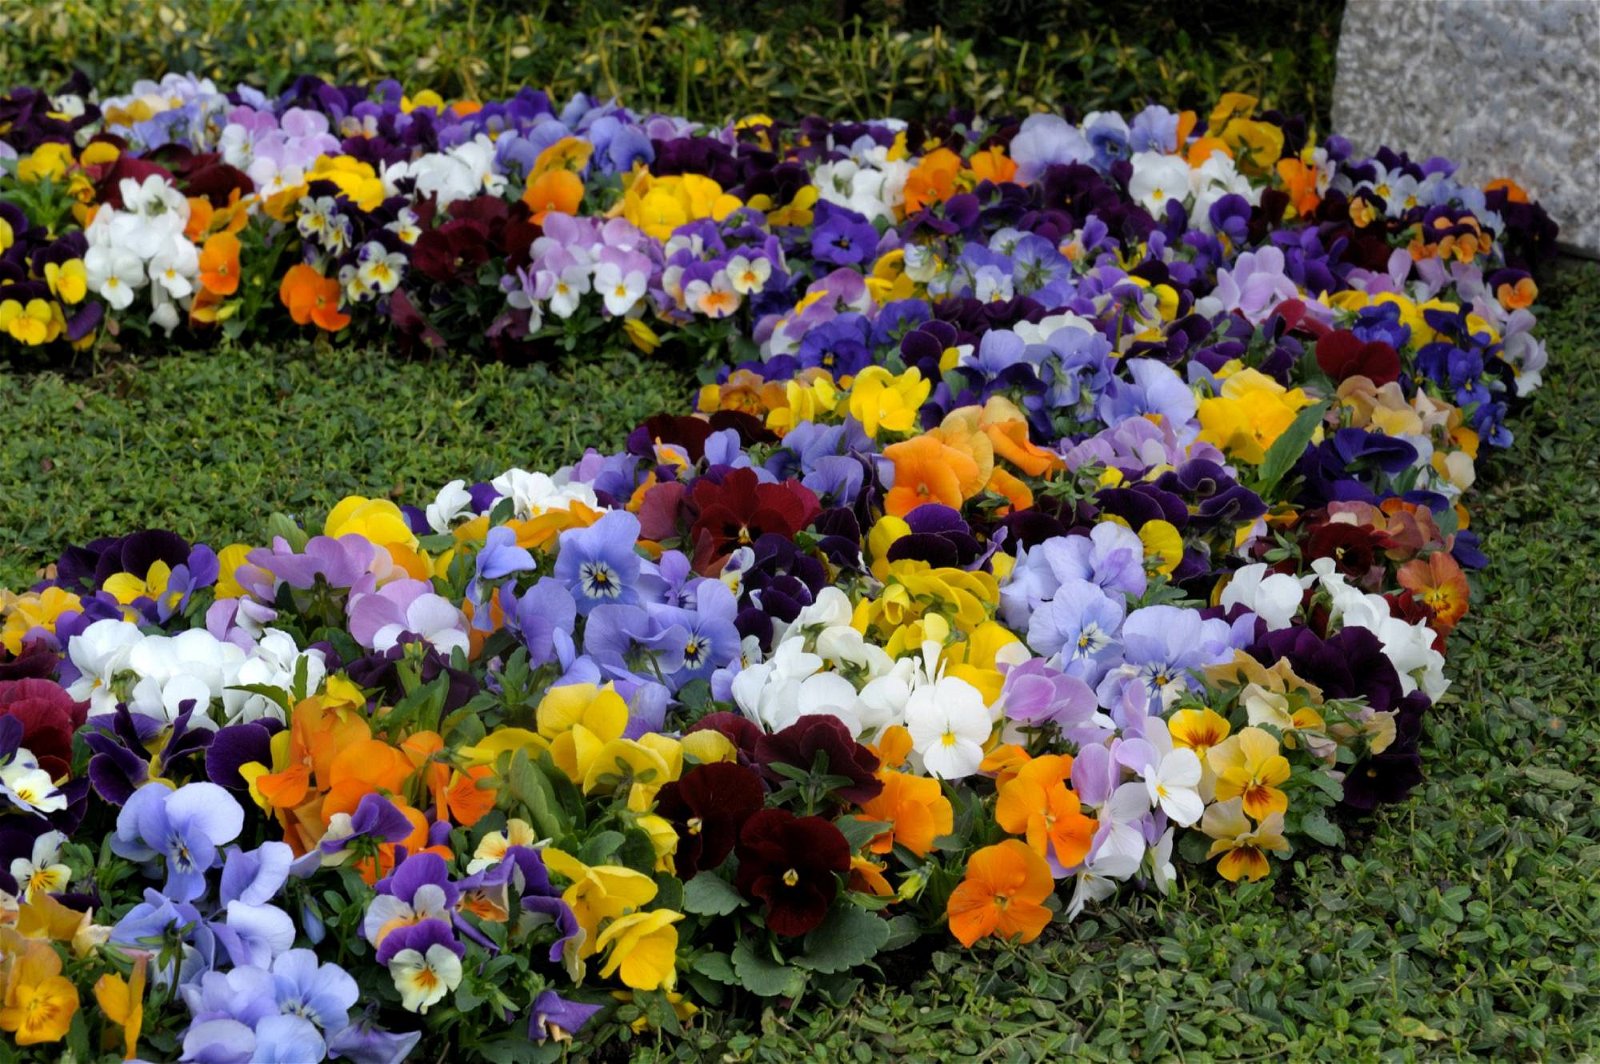 Grabgestaltung im Frühling mit bunten Blüten